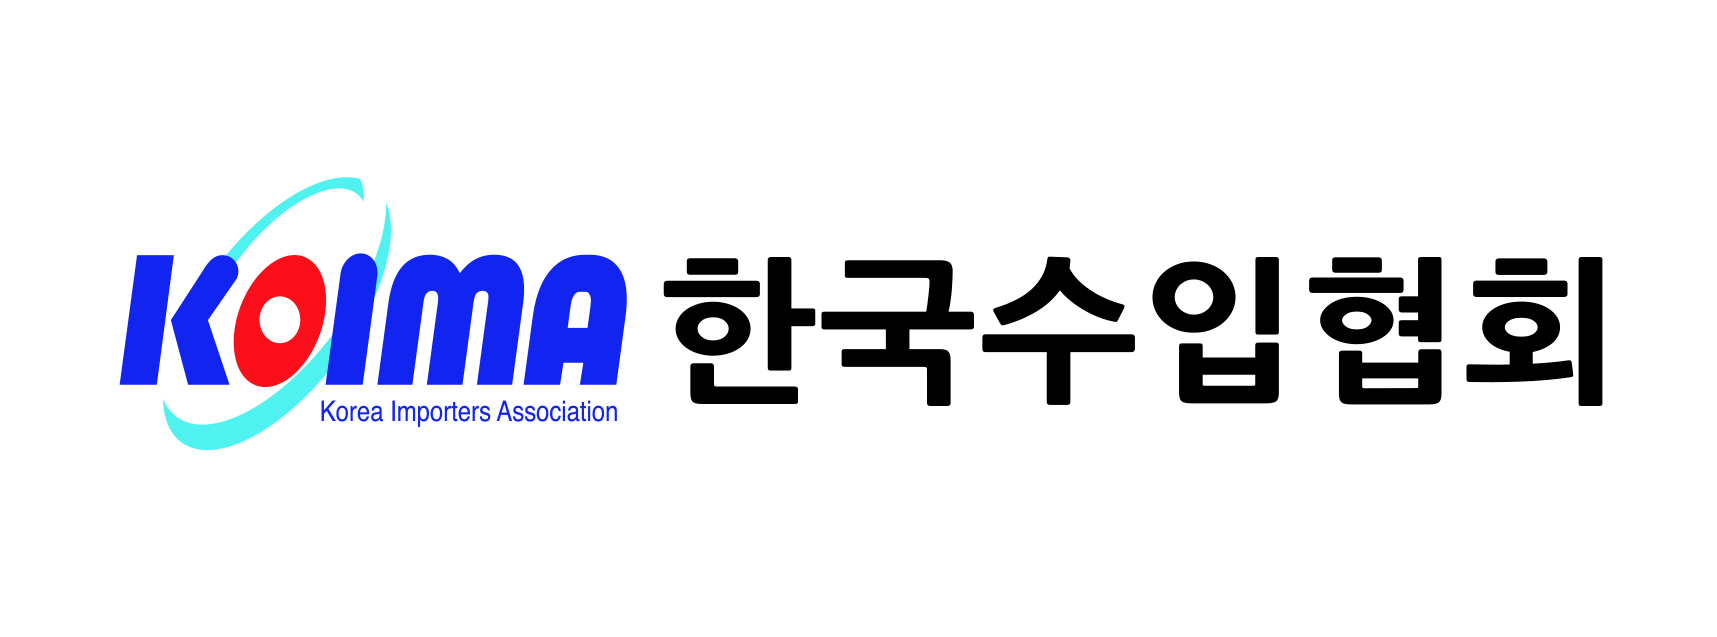 (사)한국수입협회의 기업로고